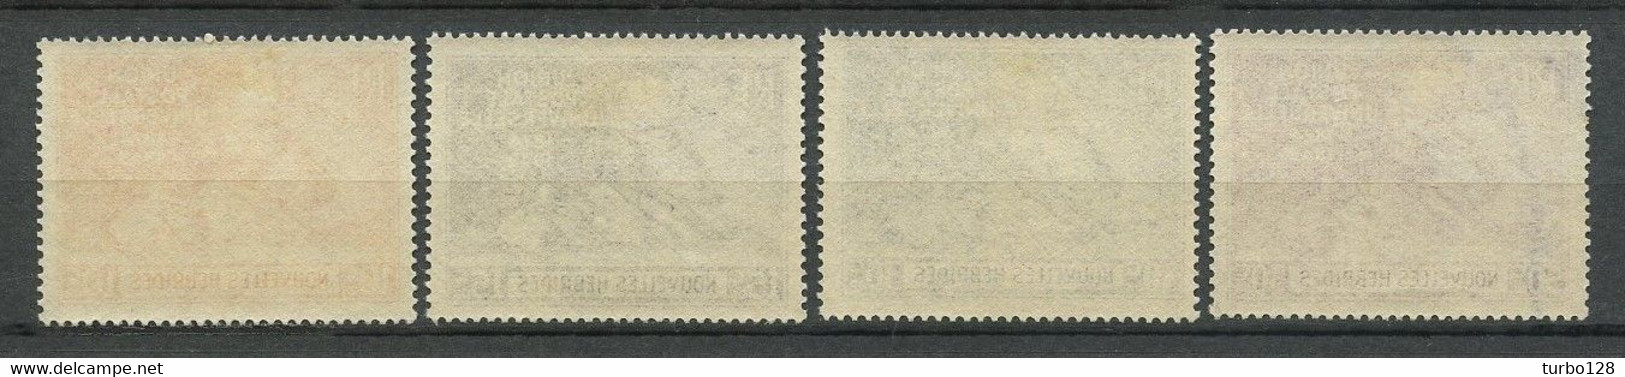 Nlle Hébrides 1949  N° 136/139 * Neufs MH Infime Trace De Charnière Superbes C 12 € Monument De Berne - Unused Stamps